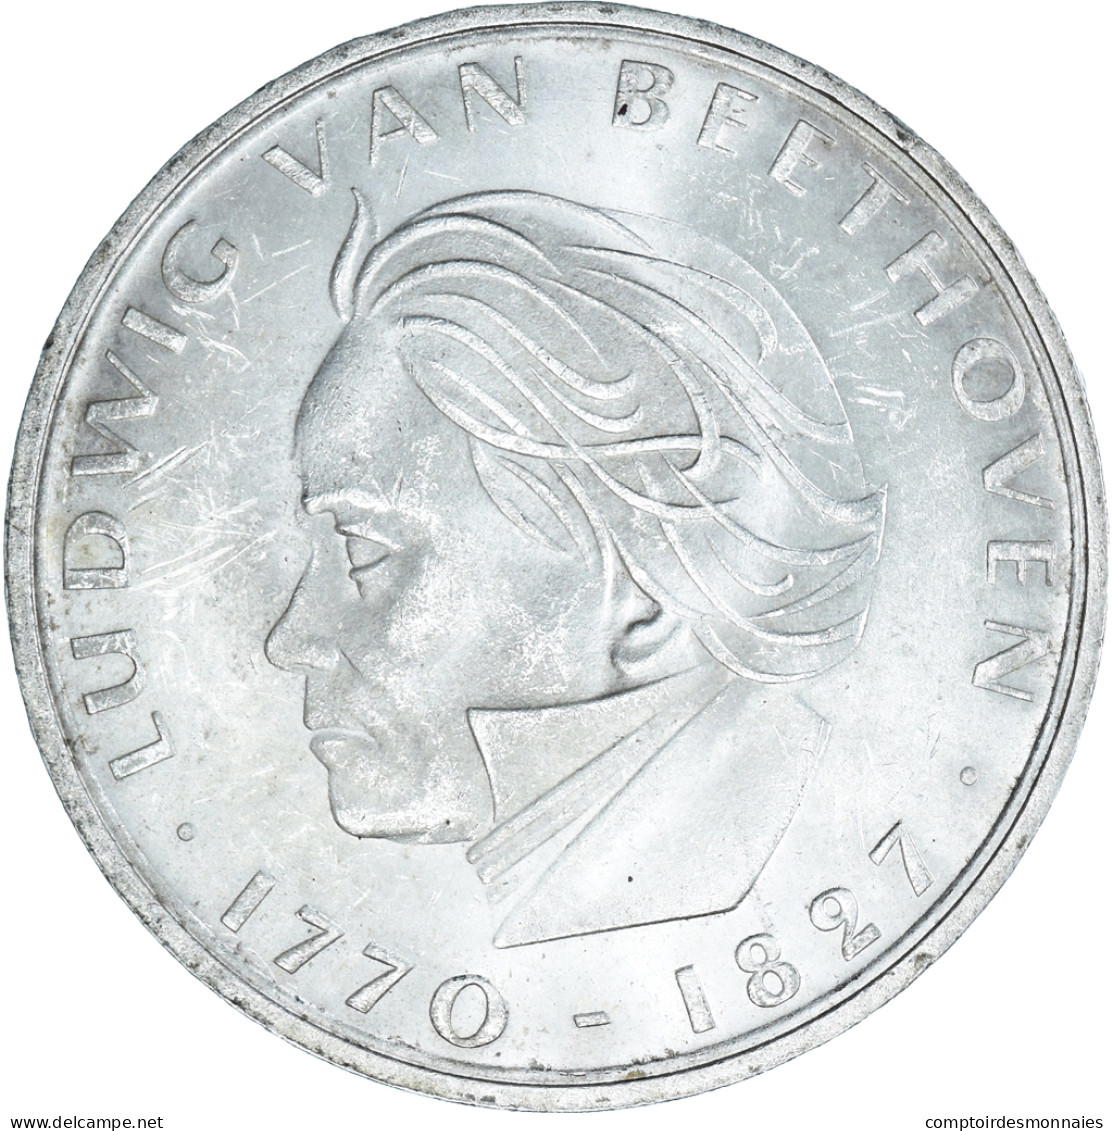 Monnaie, République Fédérale Allemande, 5 Mark, 1970, Stuttgart, Germany - 5 Marcos